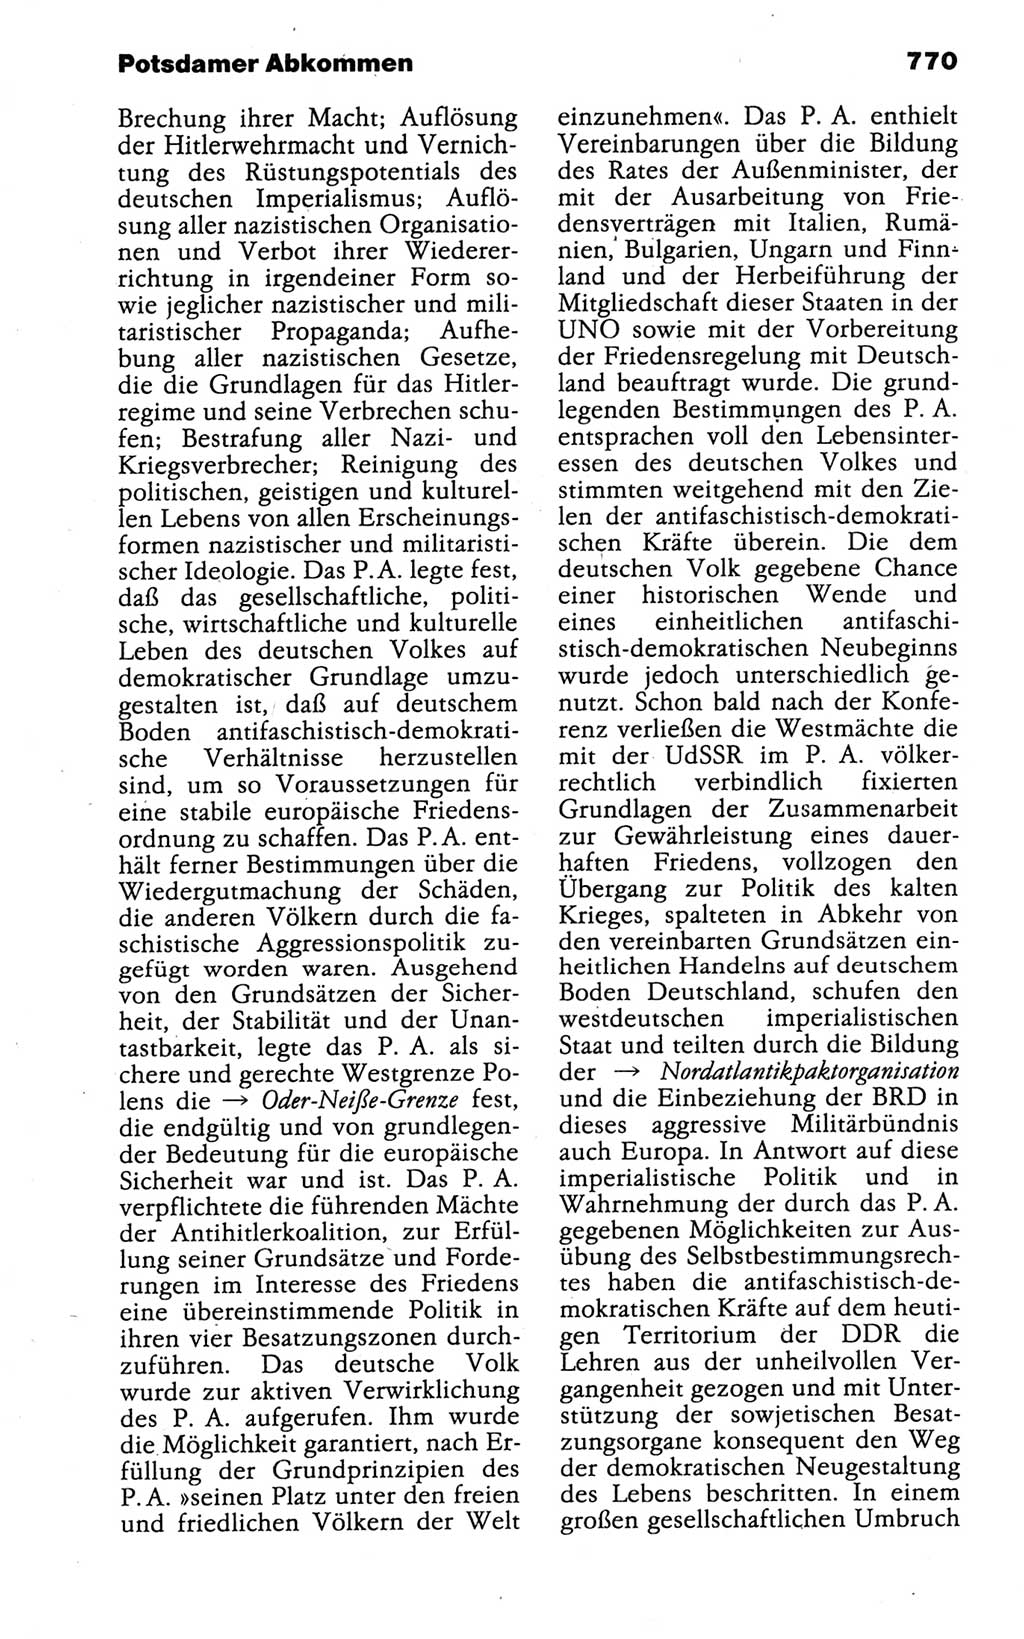 Kleines politisches Wörterbuch [Deutsche Demokratische Republik (DDR)] 1988, Seite 770 (Kl. pol. Wb. DDR 1988, S. 770)